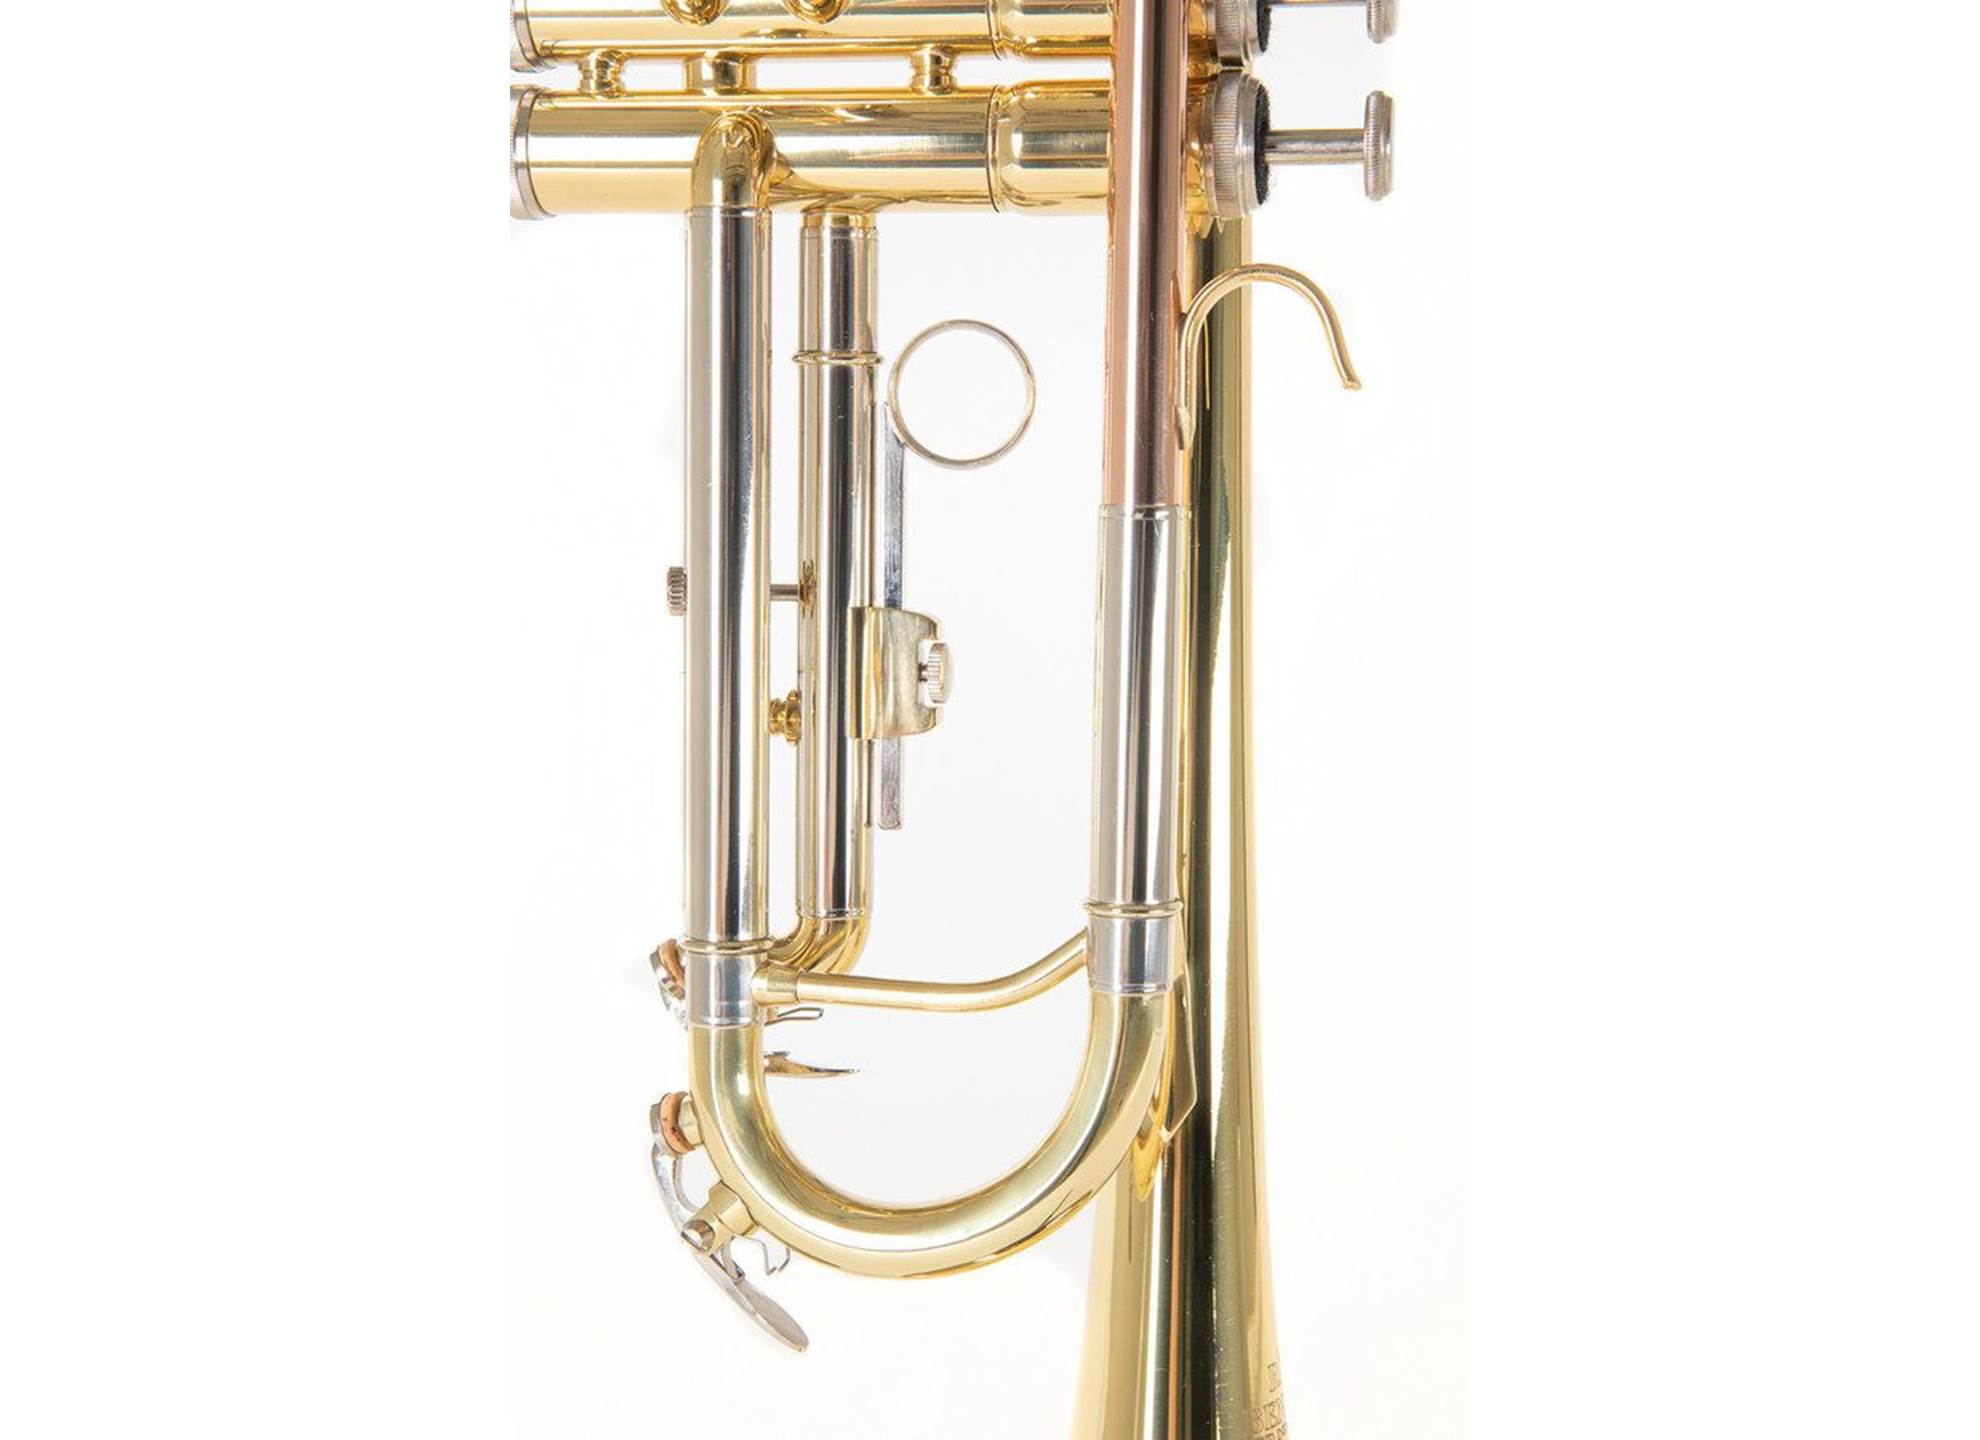 Bb-Trumpet TR-202